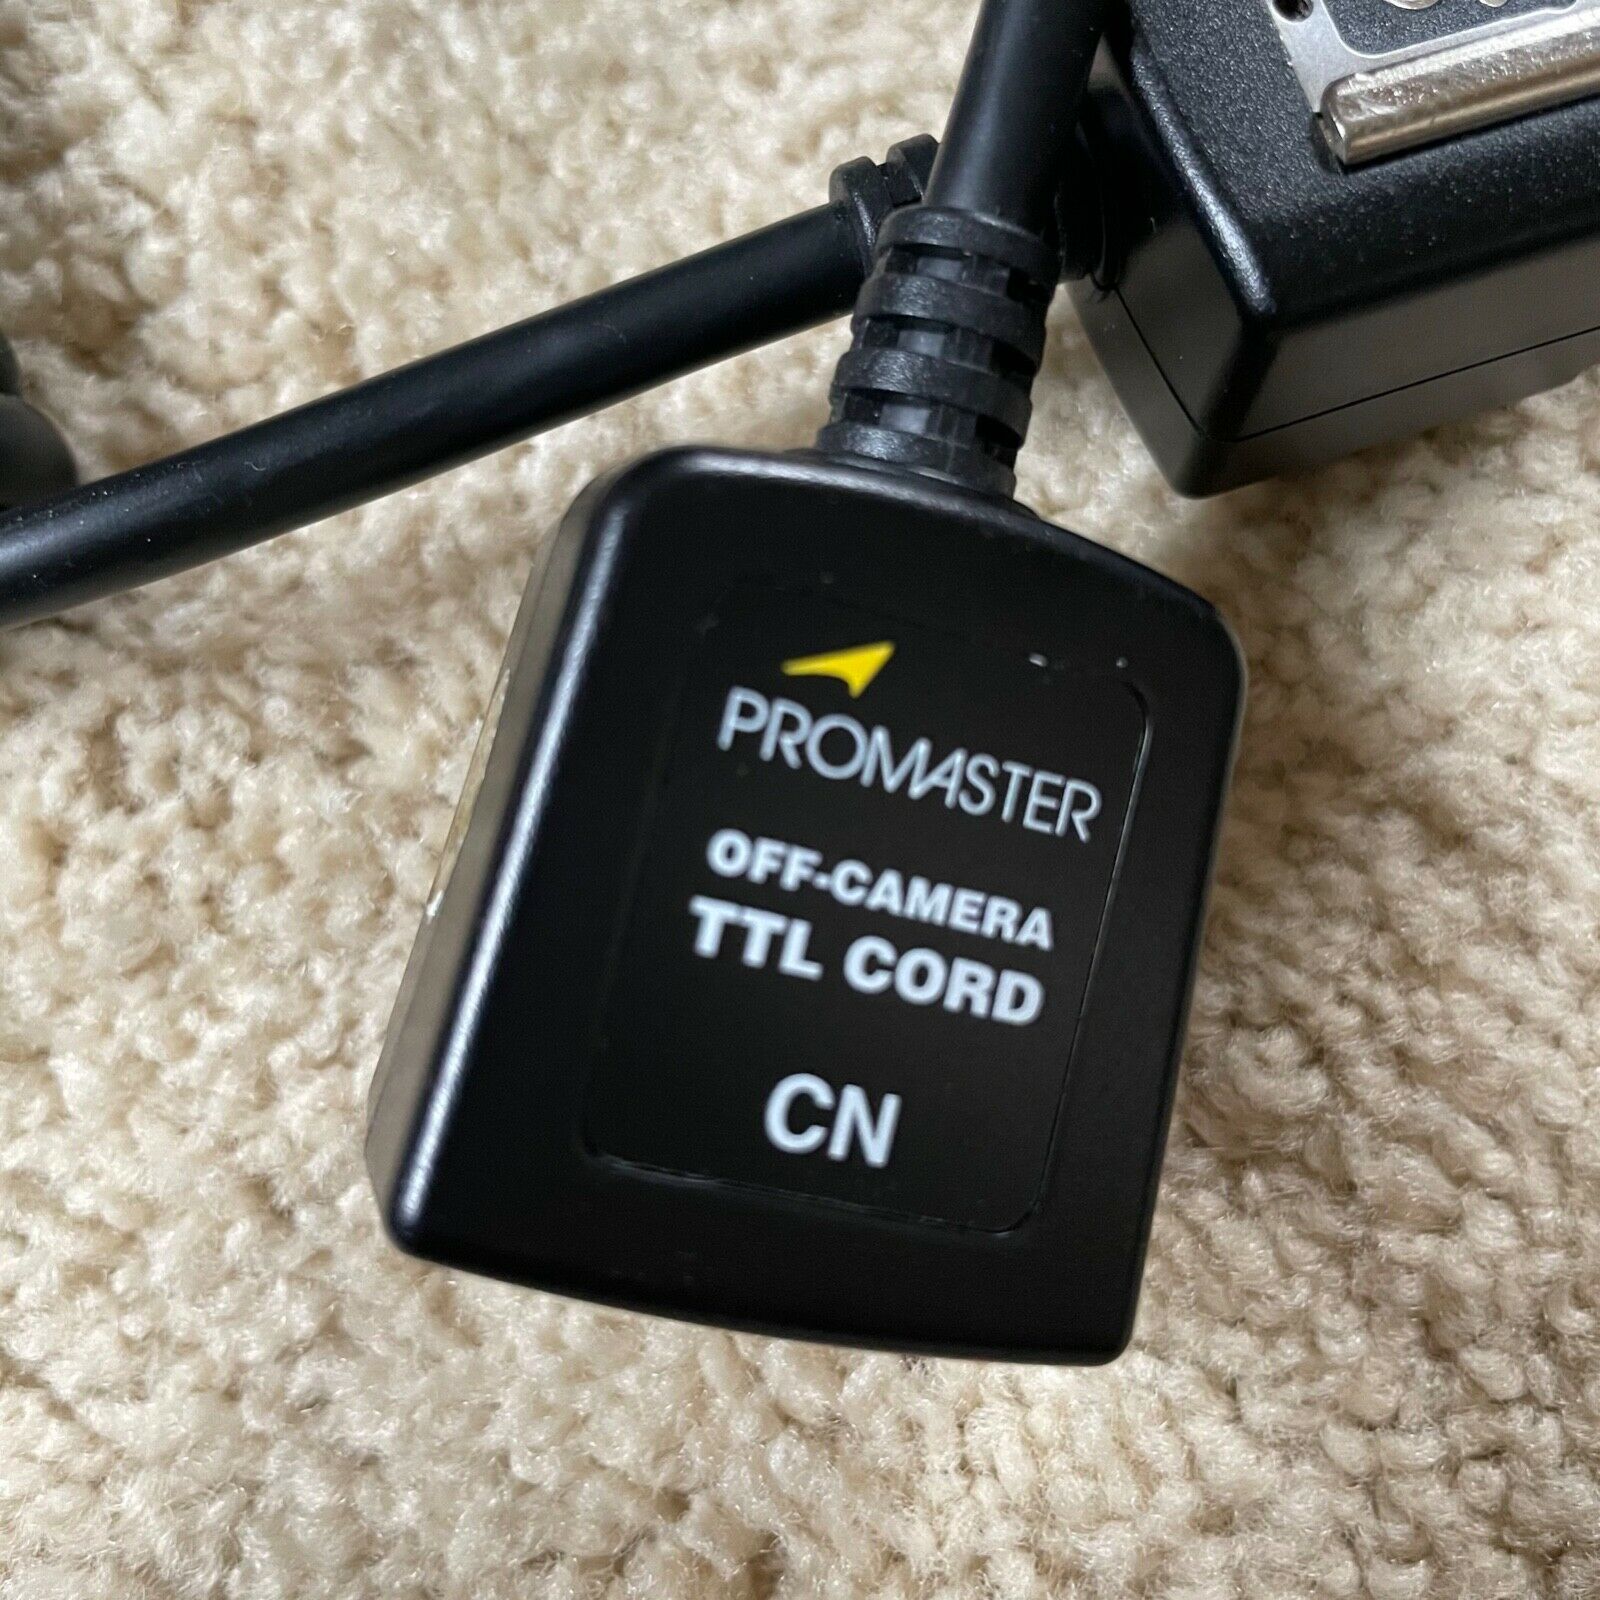 Promaster Off-camera Ttl Remote Cord For Canon Dlsr / Slr Cameras